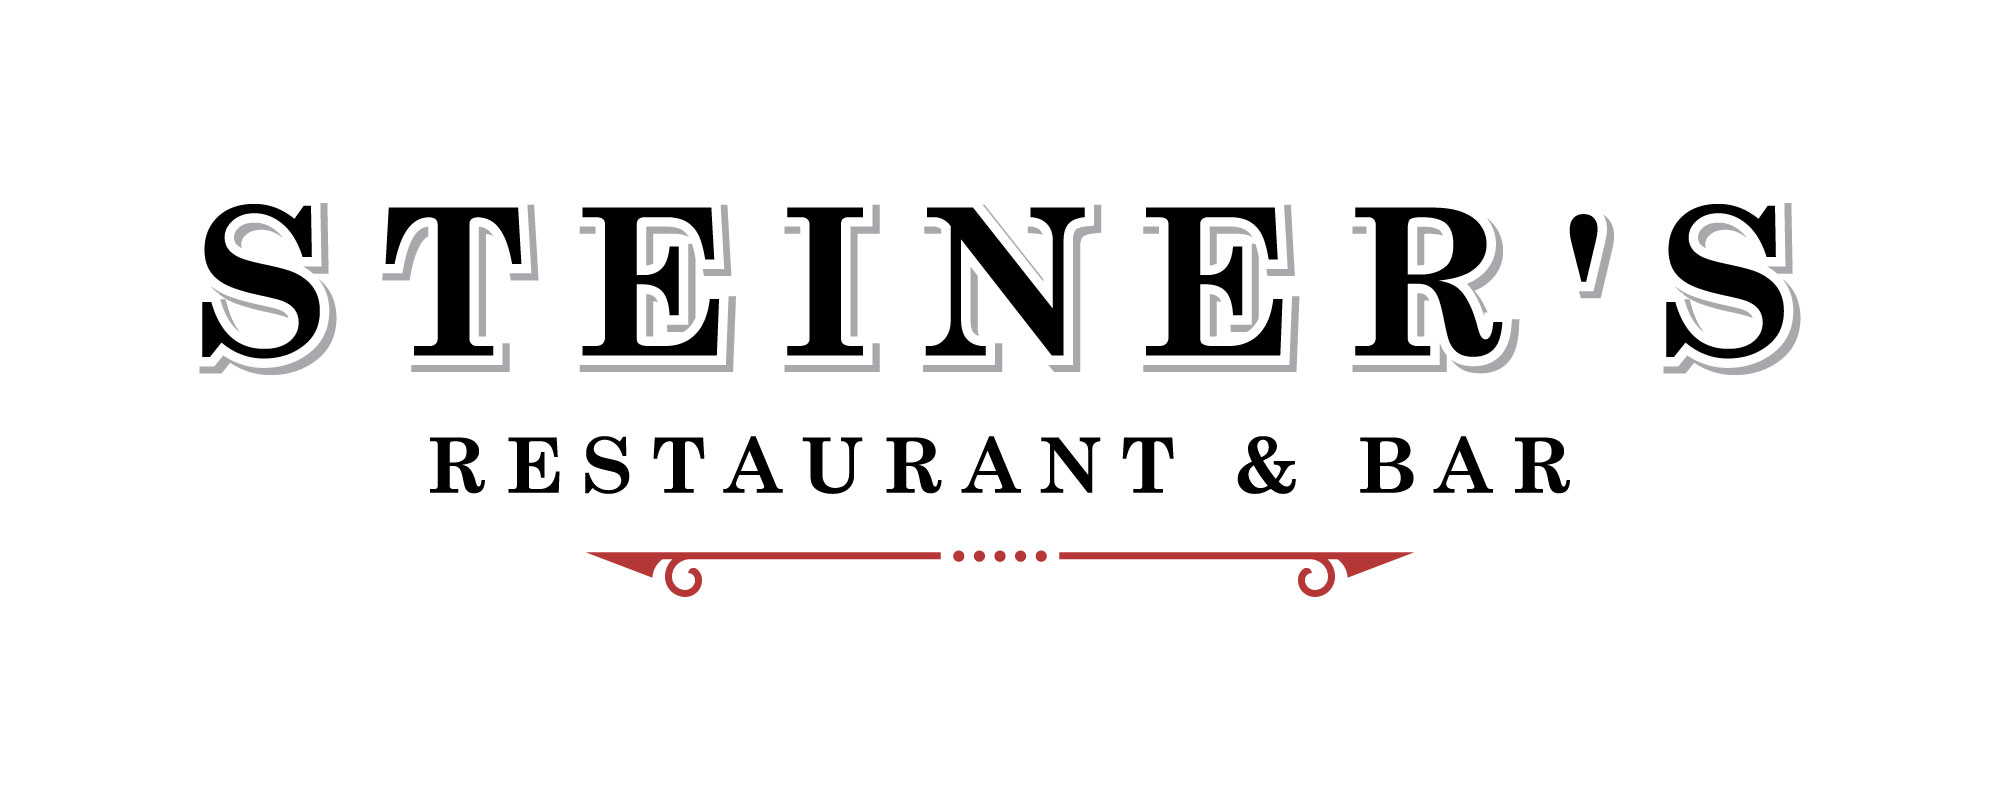 Steiner's Restaurant and Bar